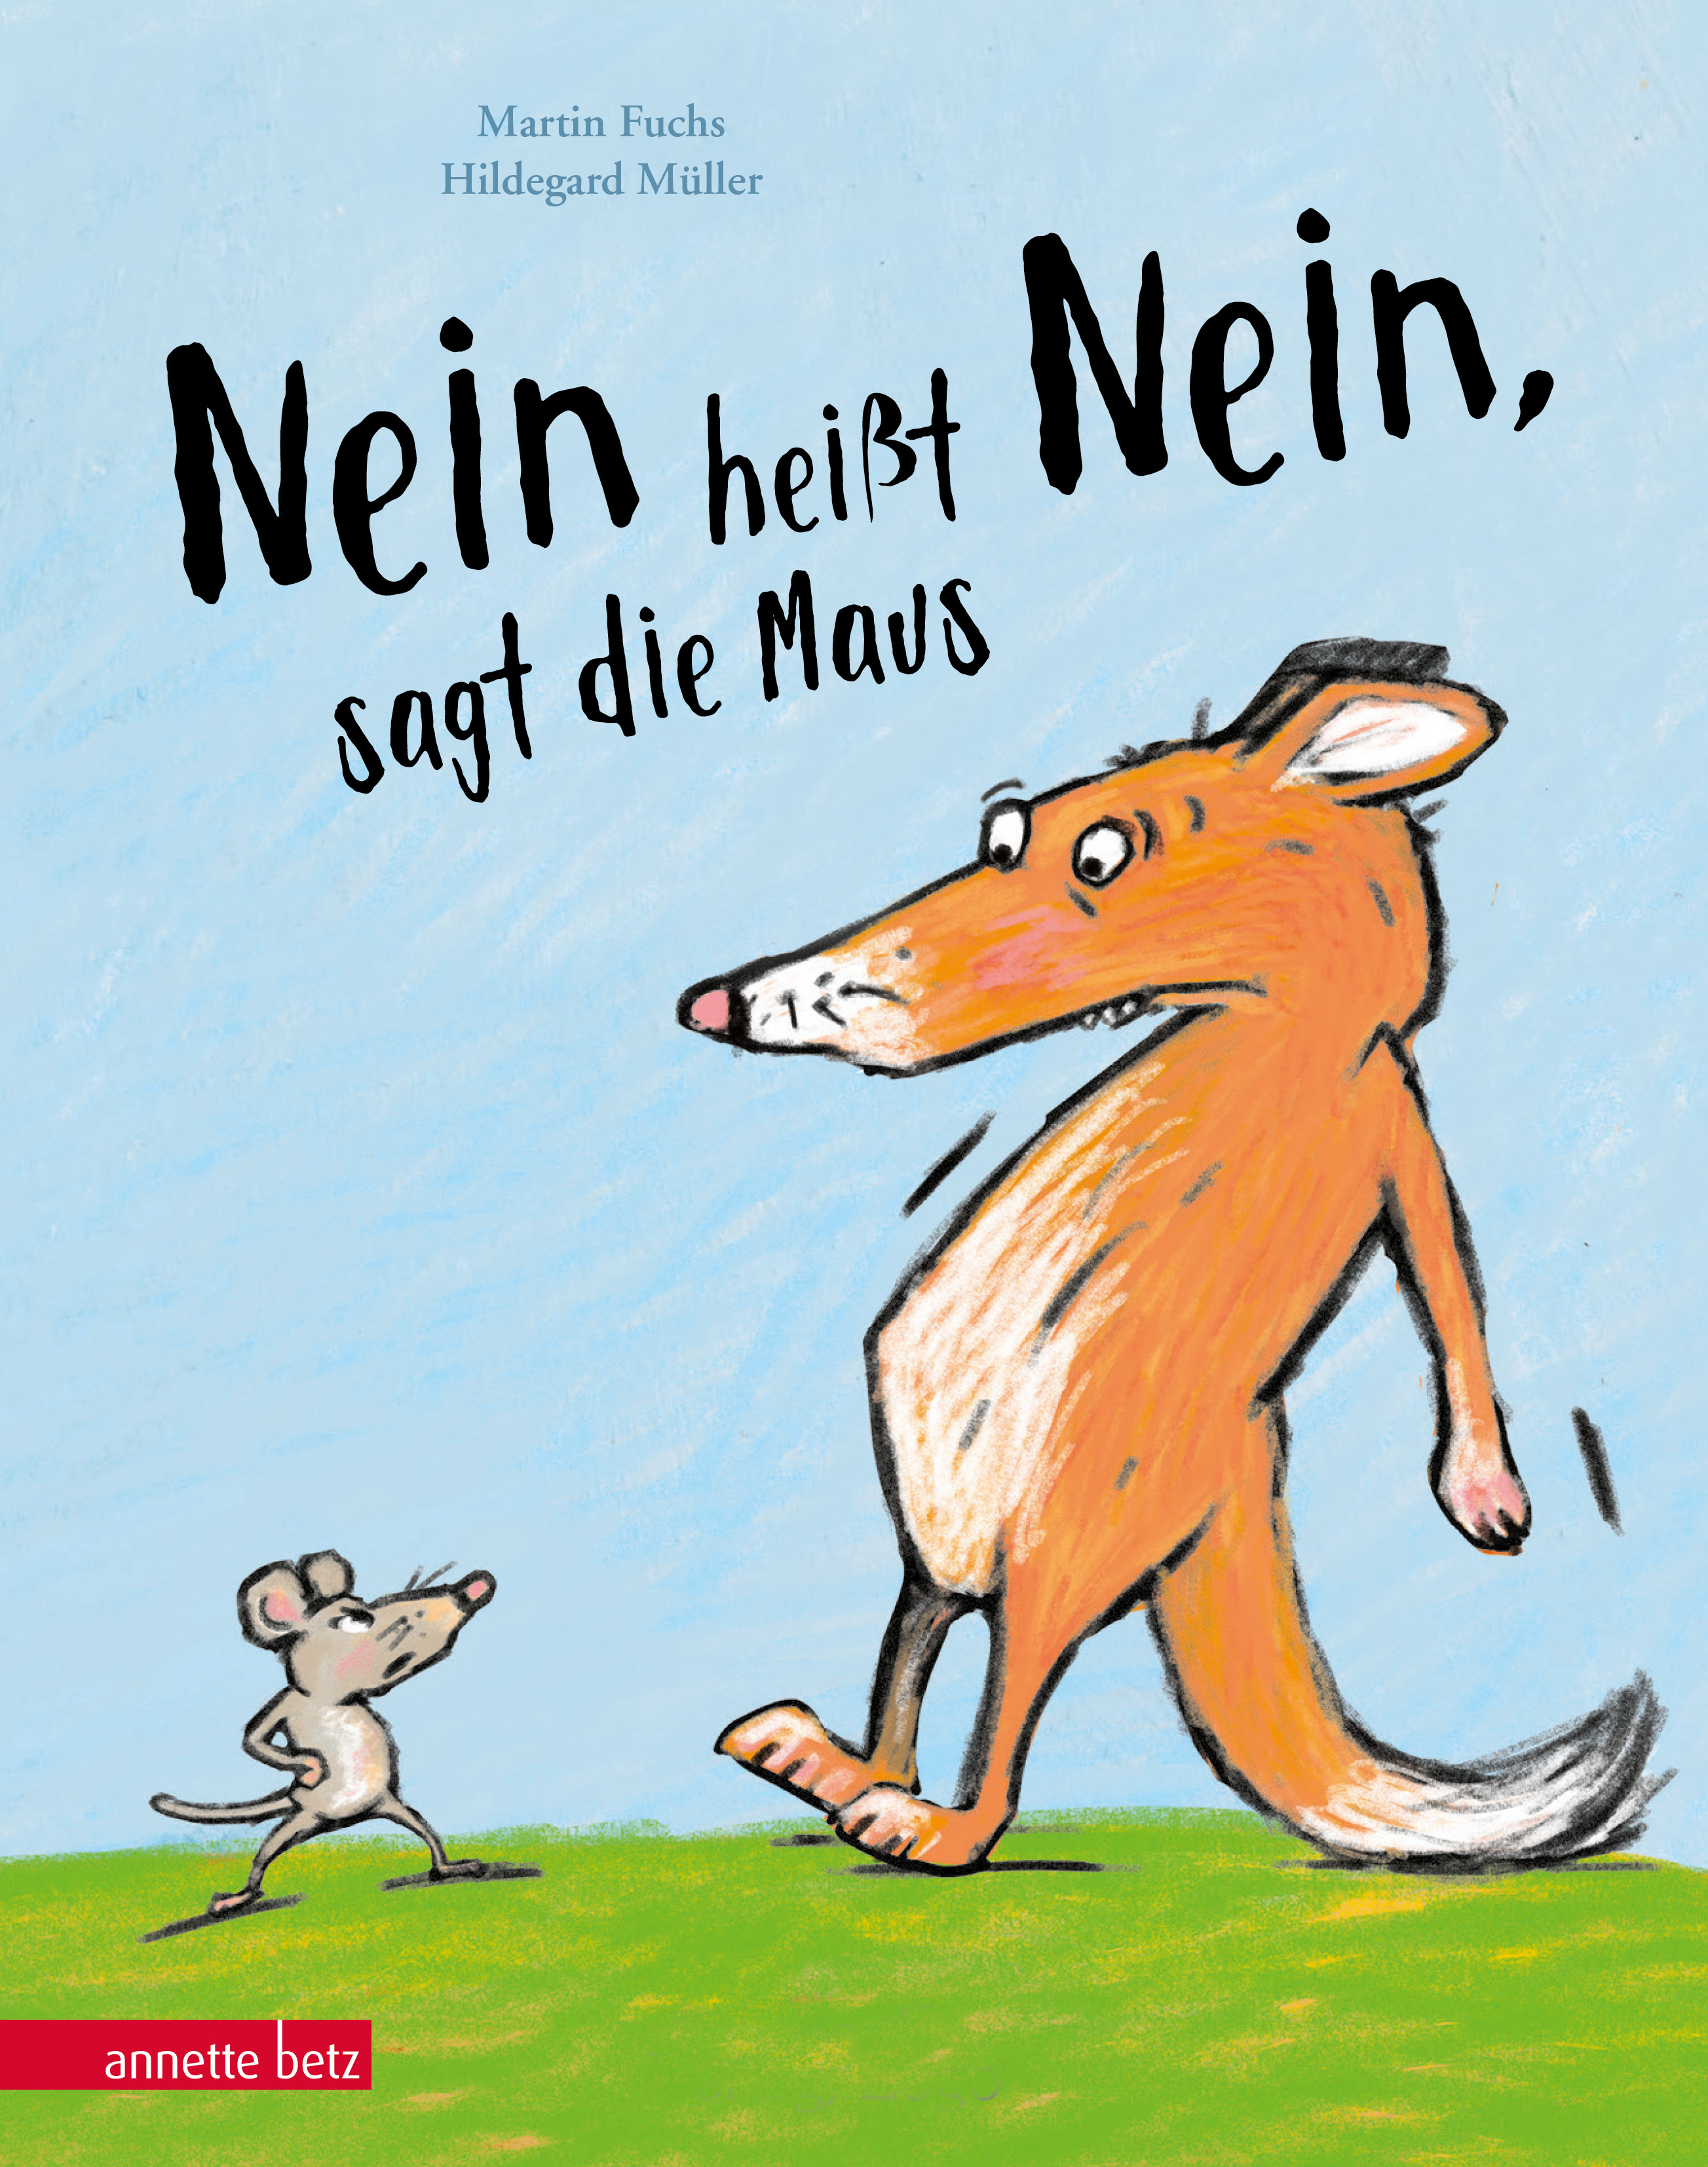 Buchcover "Nein heißt Nein, sagt die Maus", Annette Betz